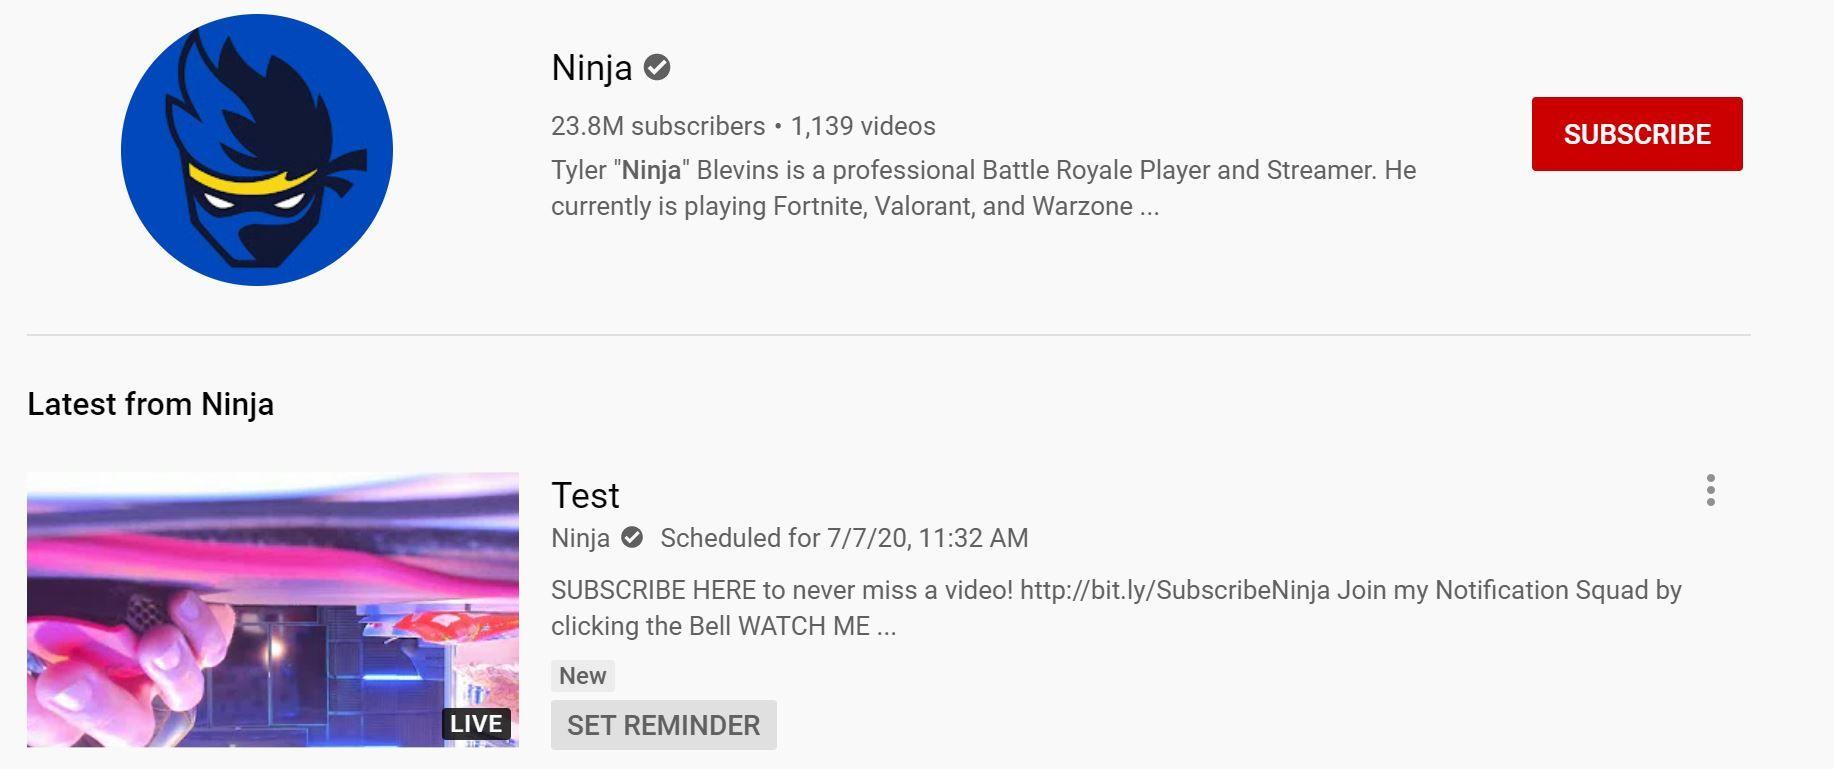 Une vidéo supprimée sur YouTube laisse planer le doute autour de l'arrivée de Ninja sur Mixer